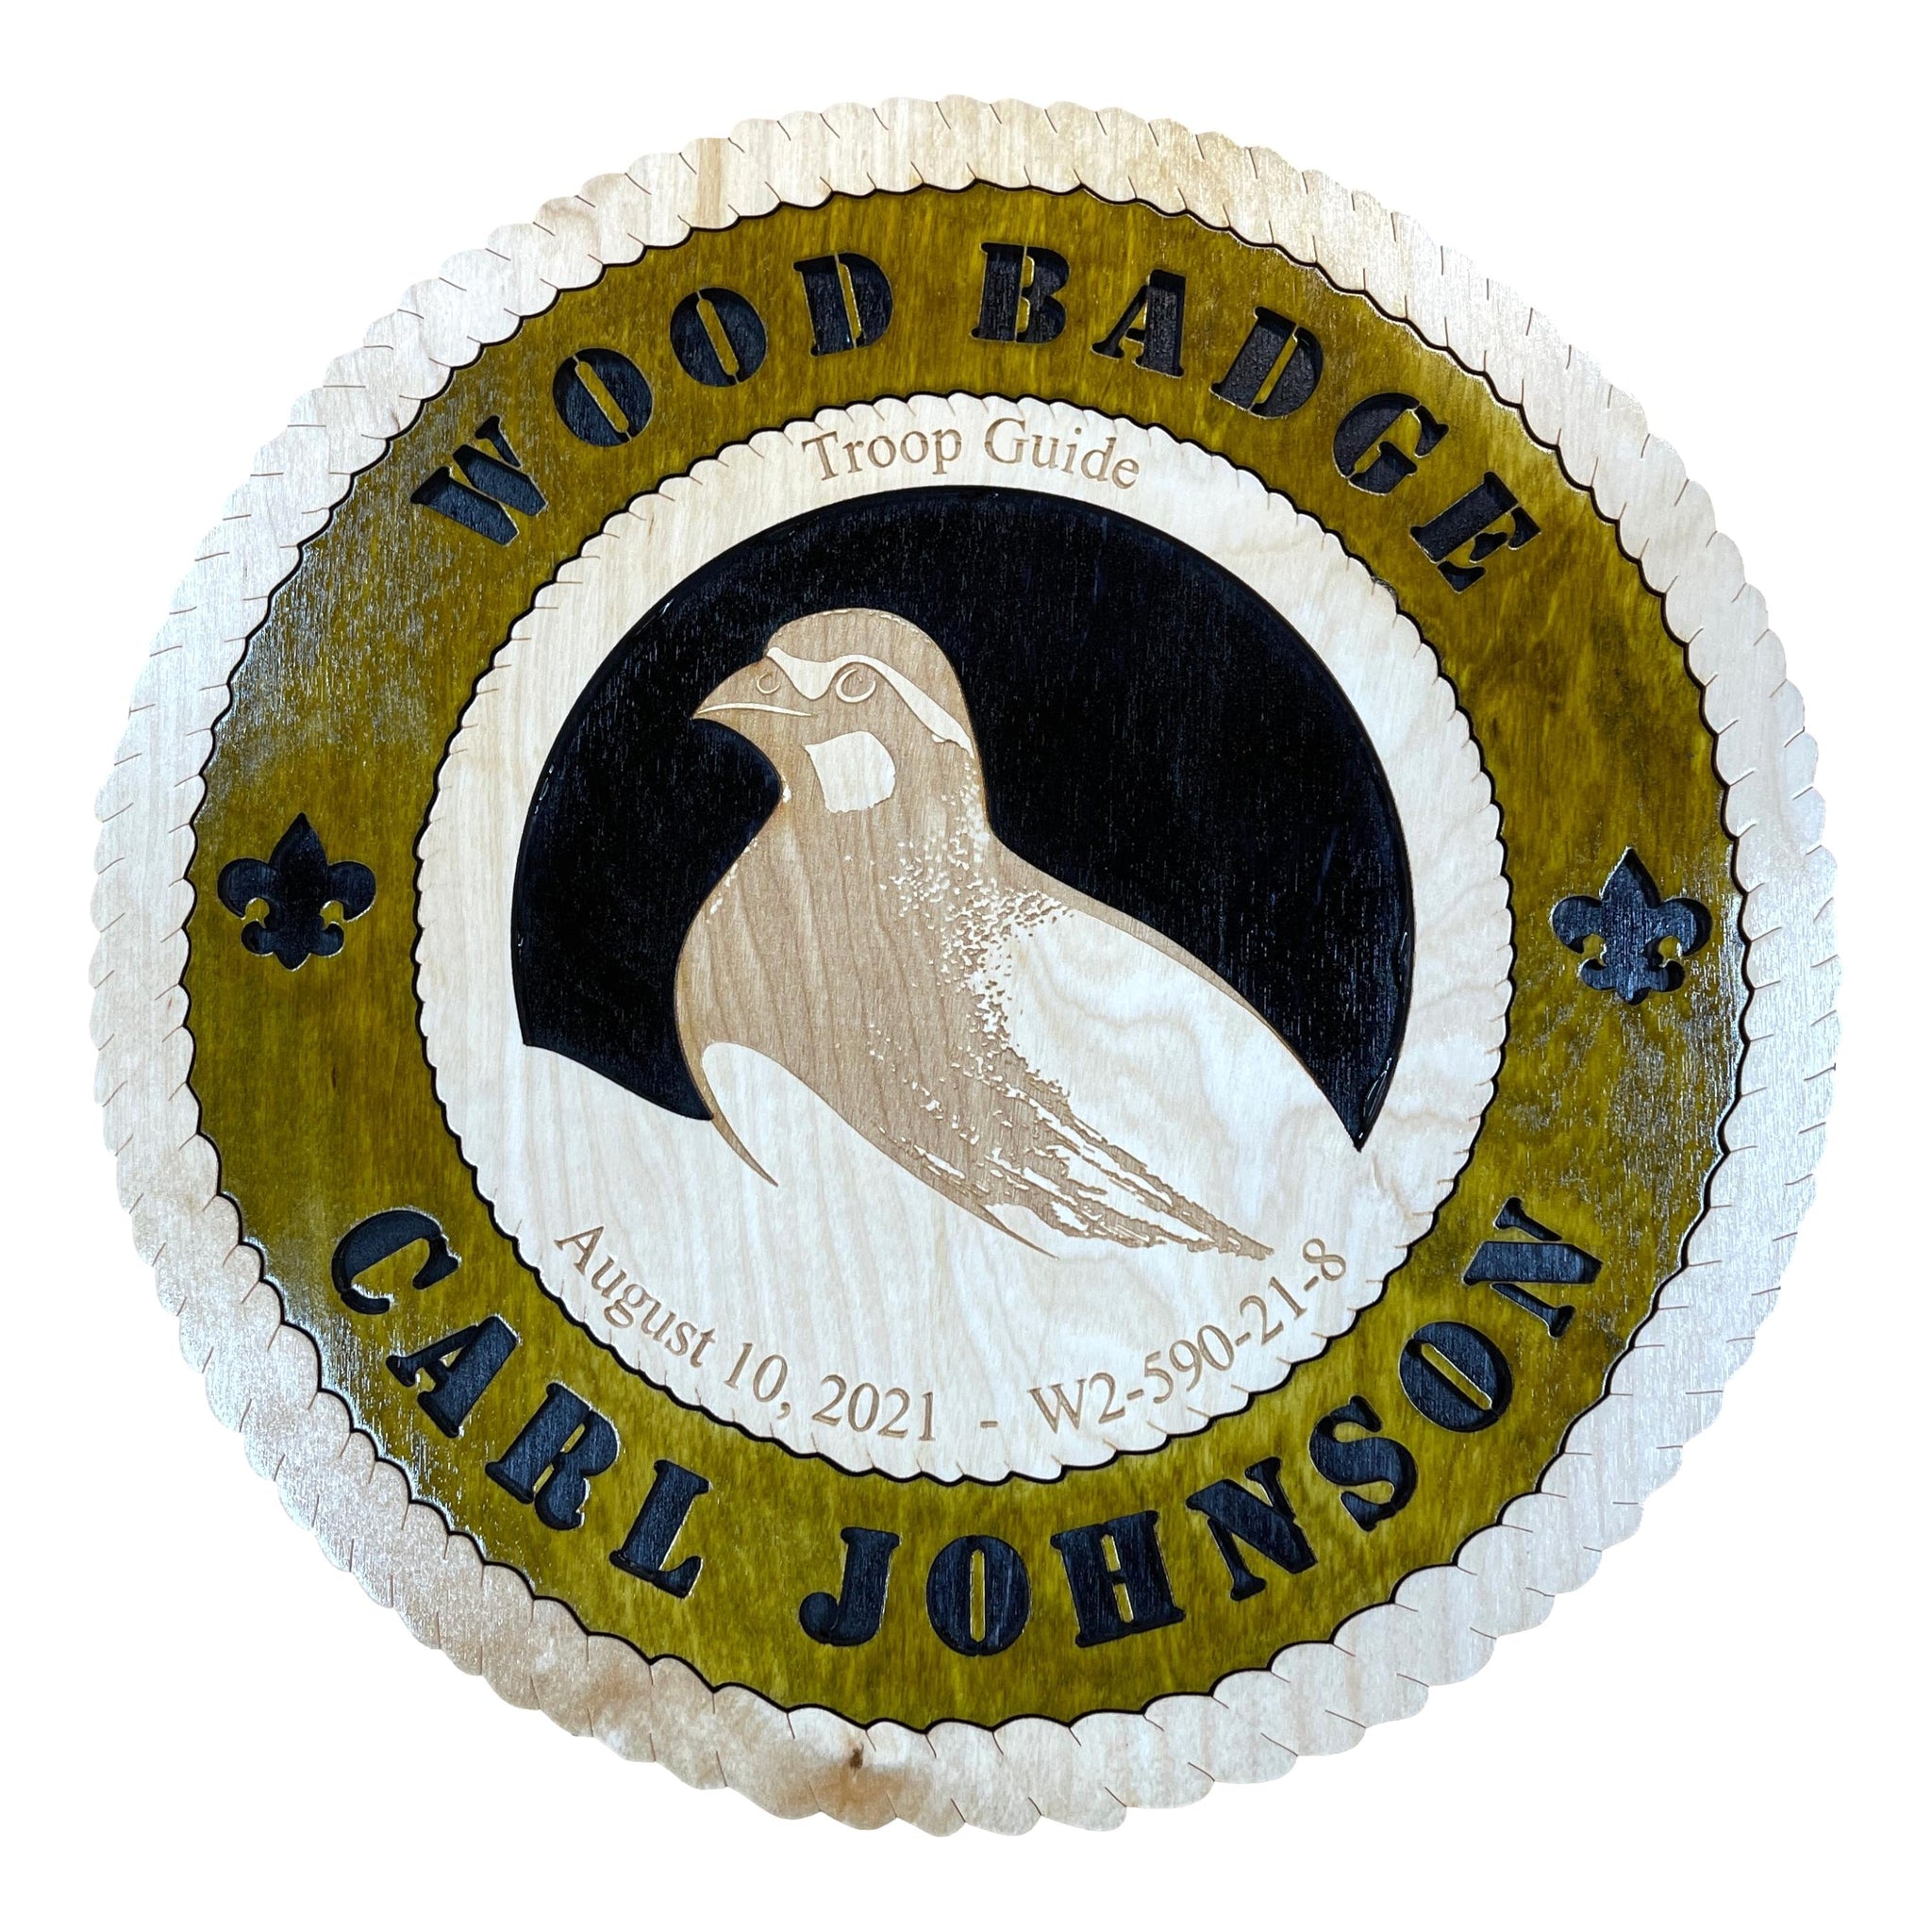 Bobwhite Wood Badge Award